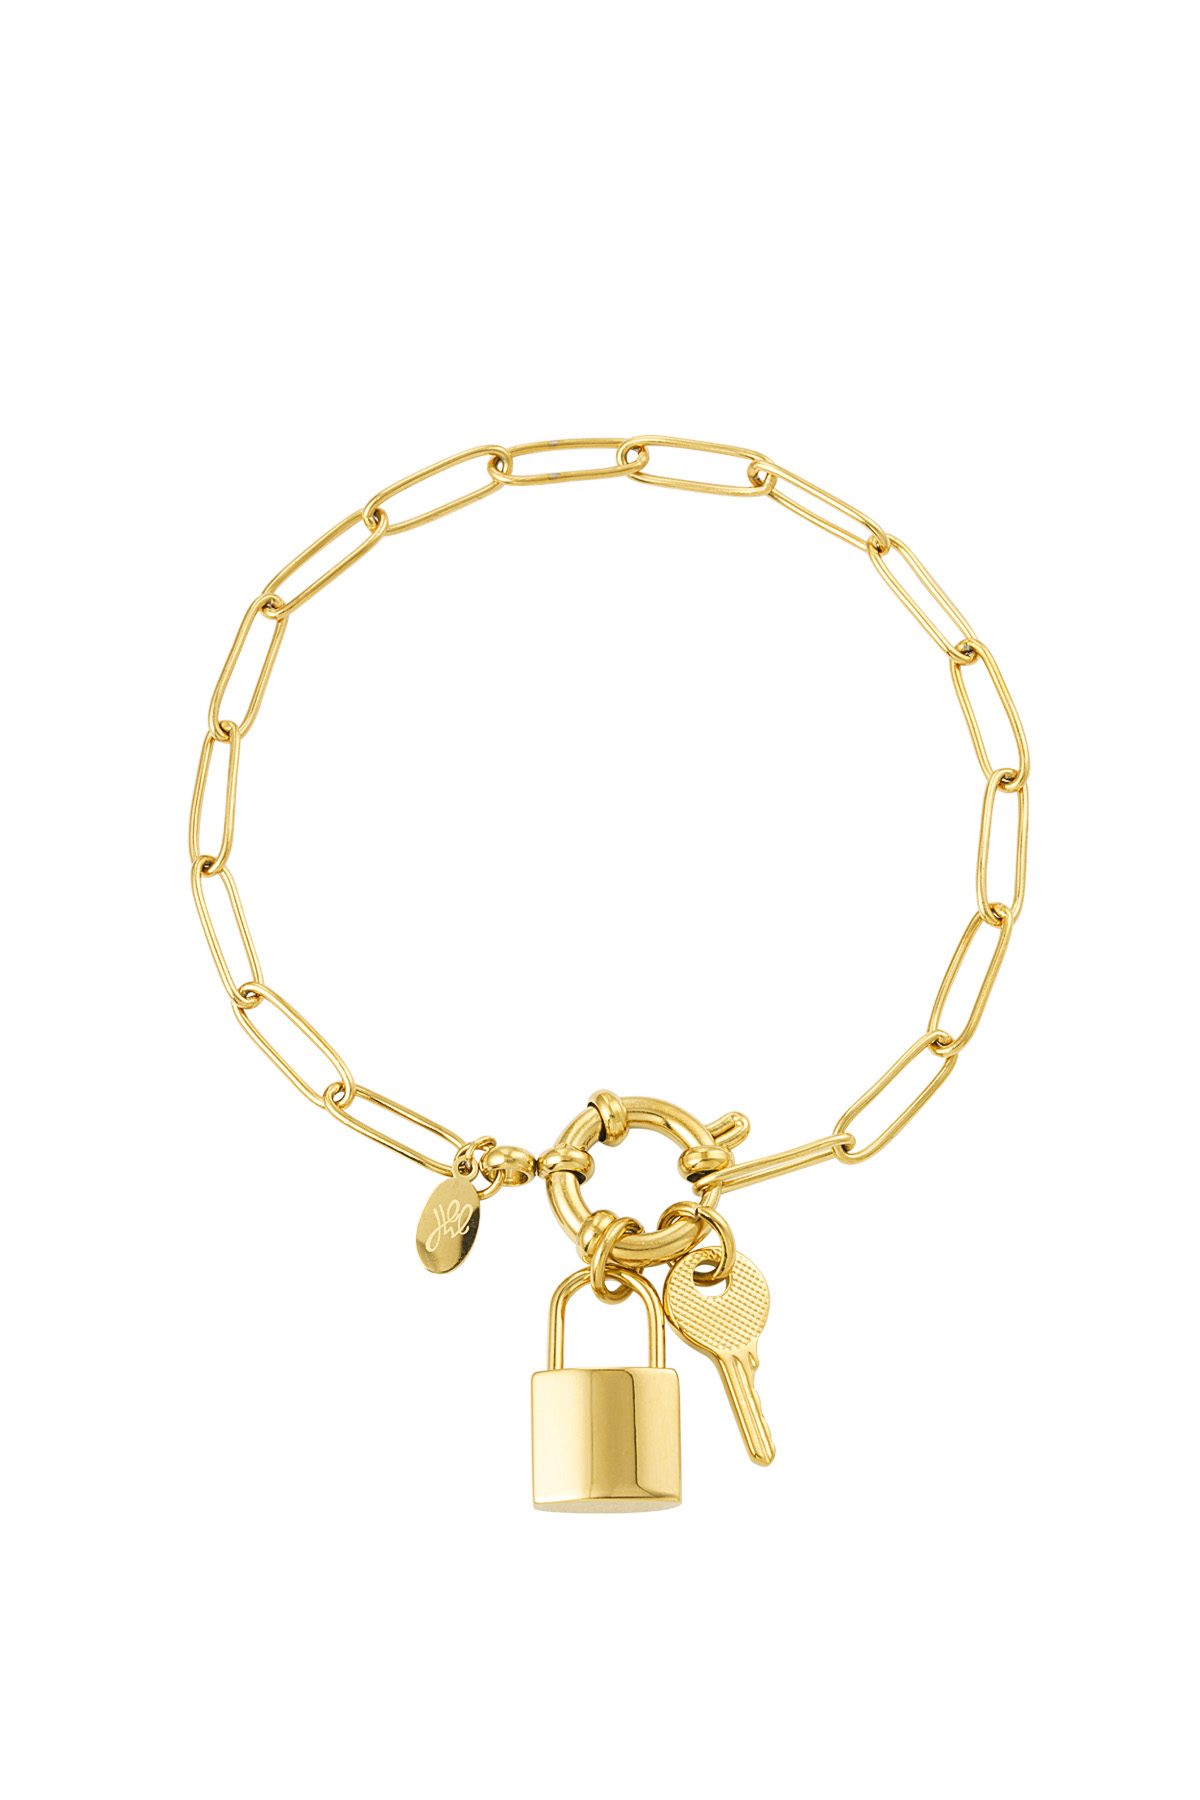 Gliederarmband mit rundem Verschluss, Schlüssel und Schloss – Gold